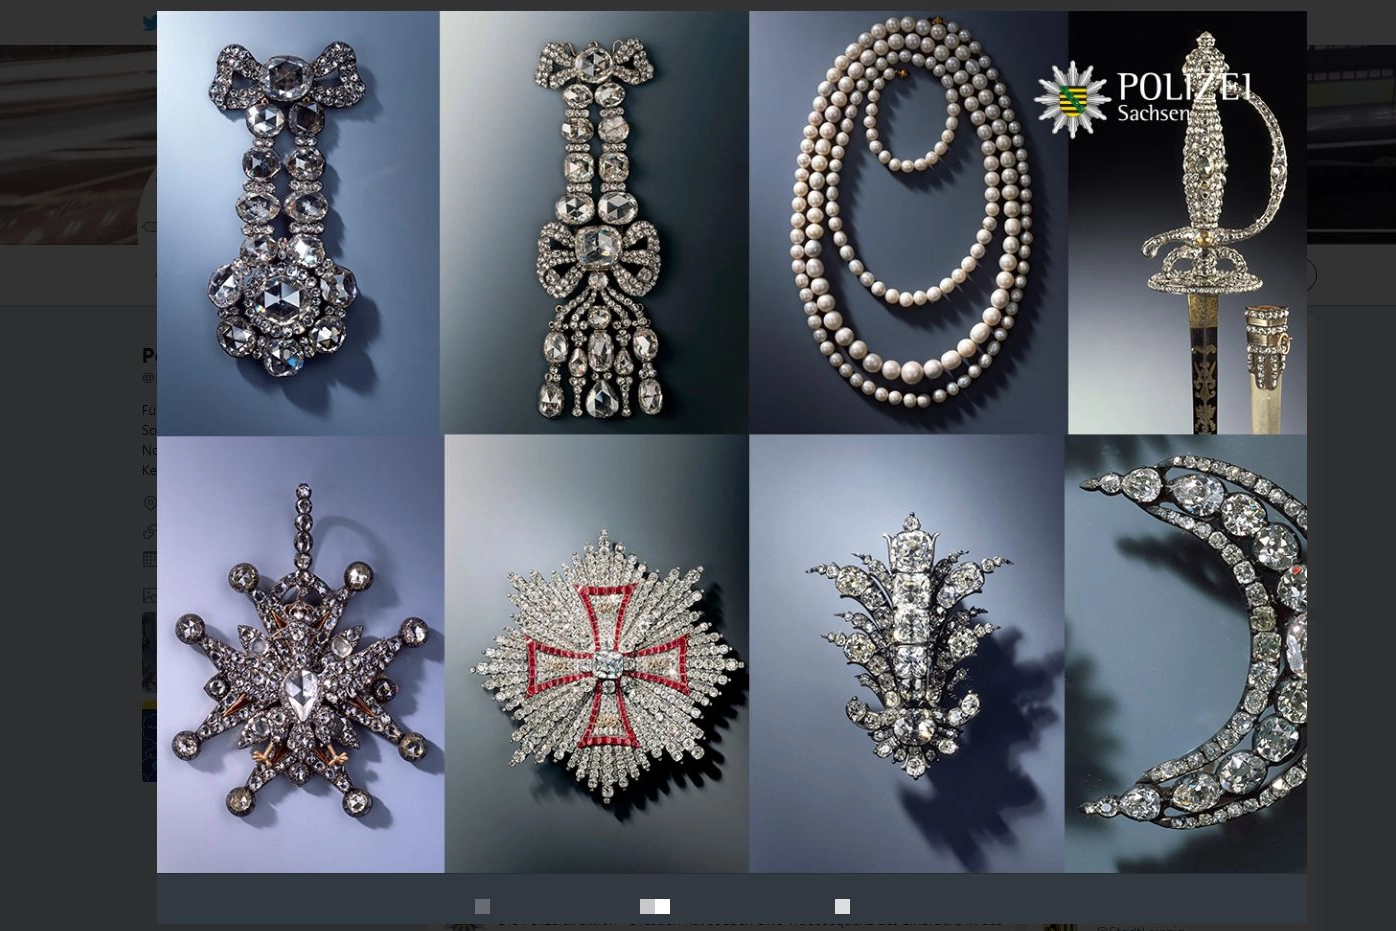 Alcuni dei gioielli rubati a Dresda nelle immagini diffuse dalla polizia su Twitter